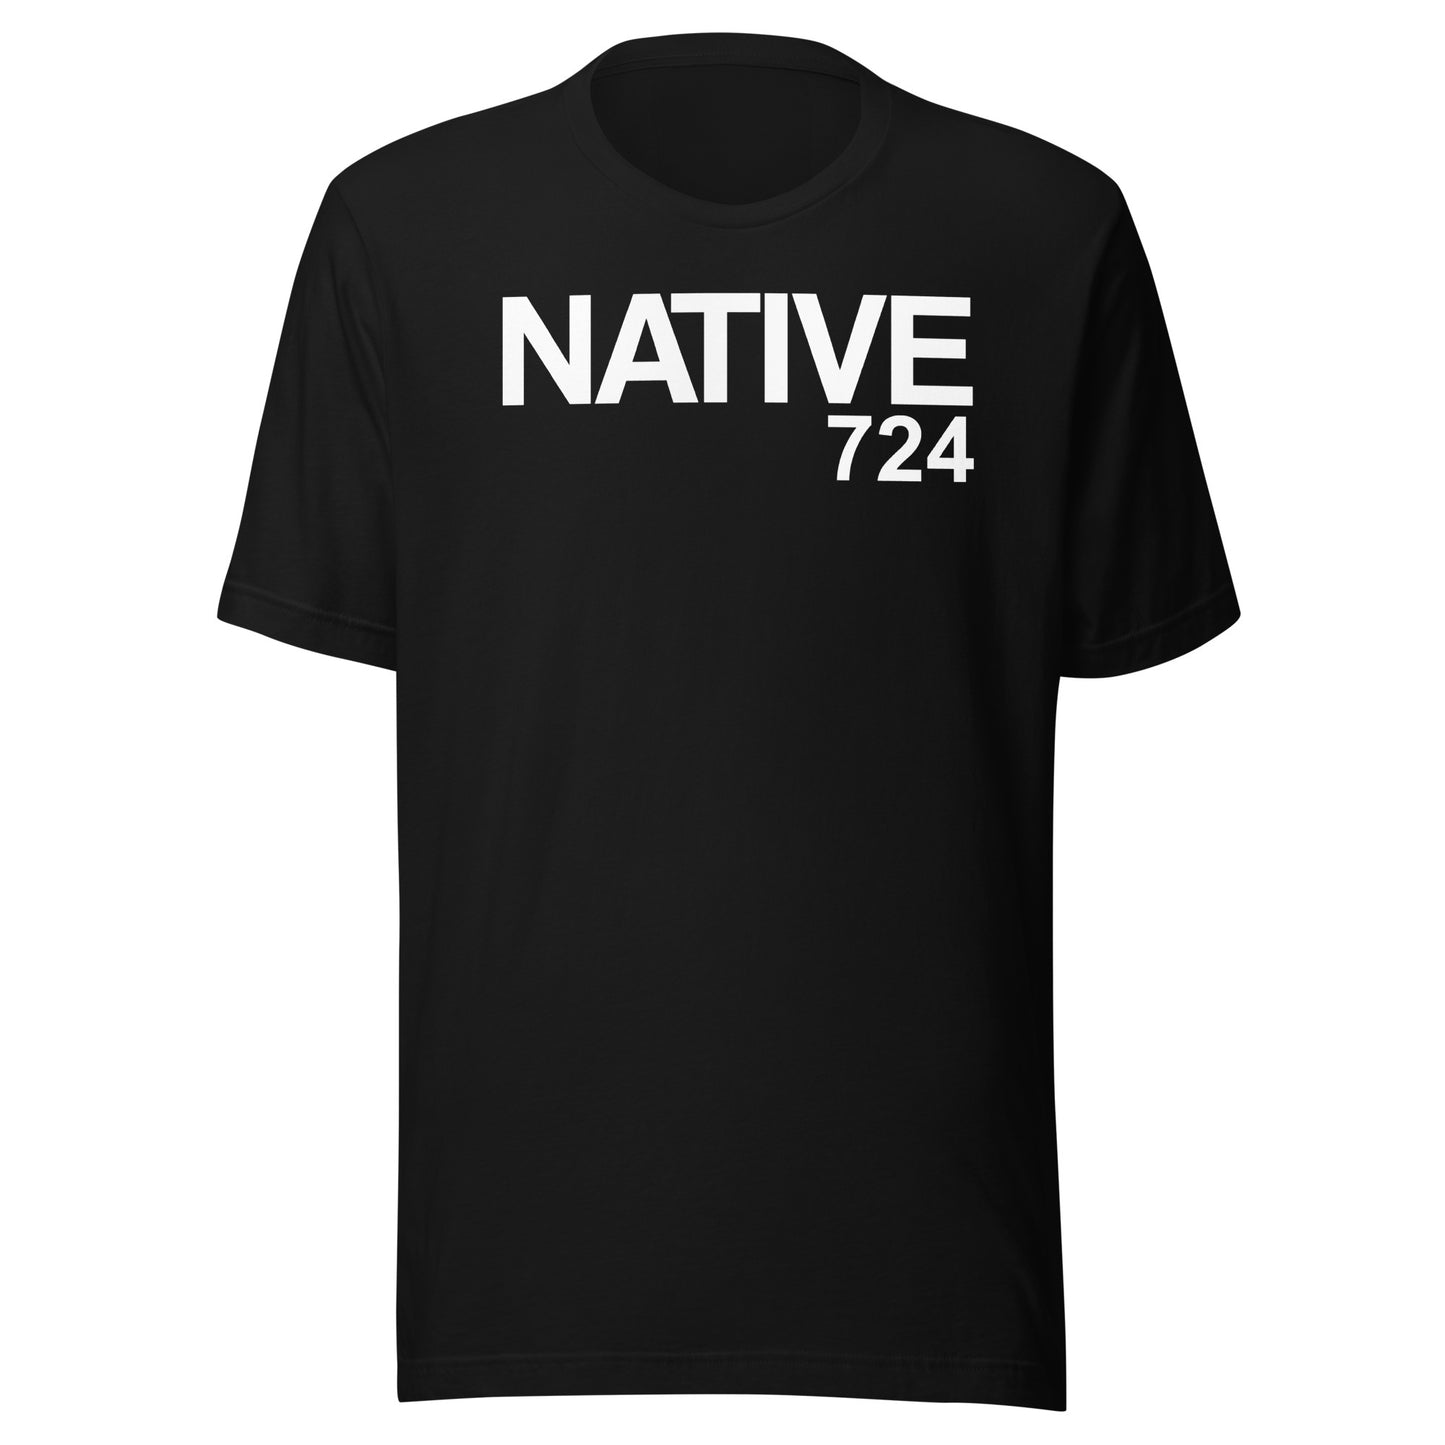 NATIVE 724 Classic Black & White T-Shirt